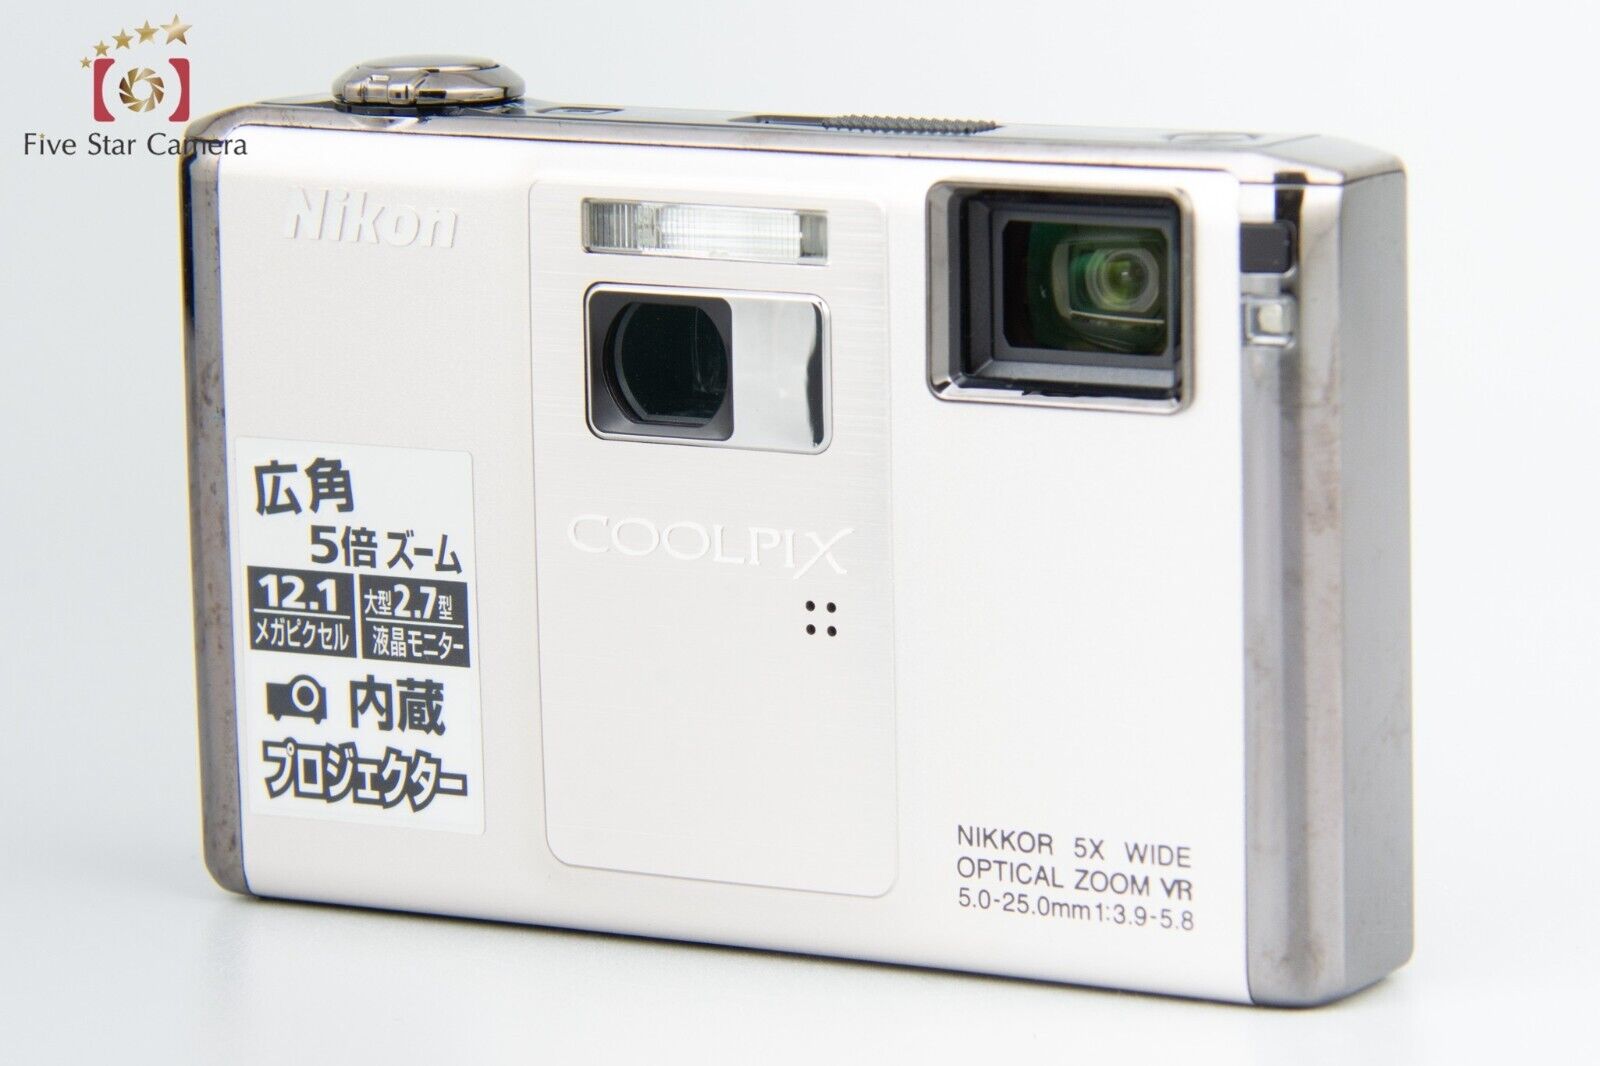 Near Mint!! Nikon COOLPIX S1000pj Silver 12.1 MP Digital Camera